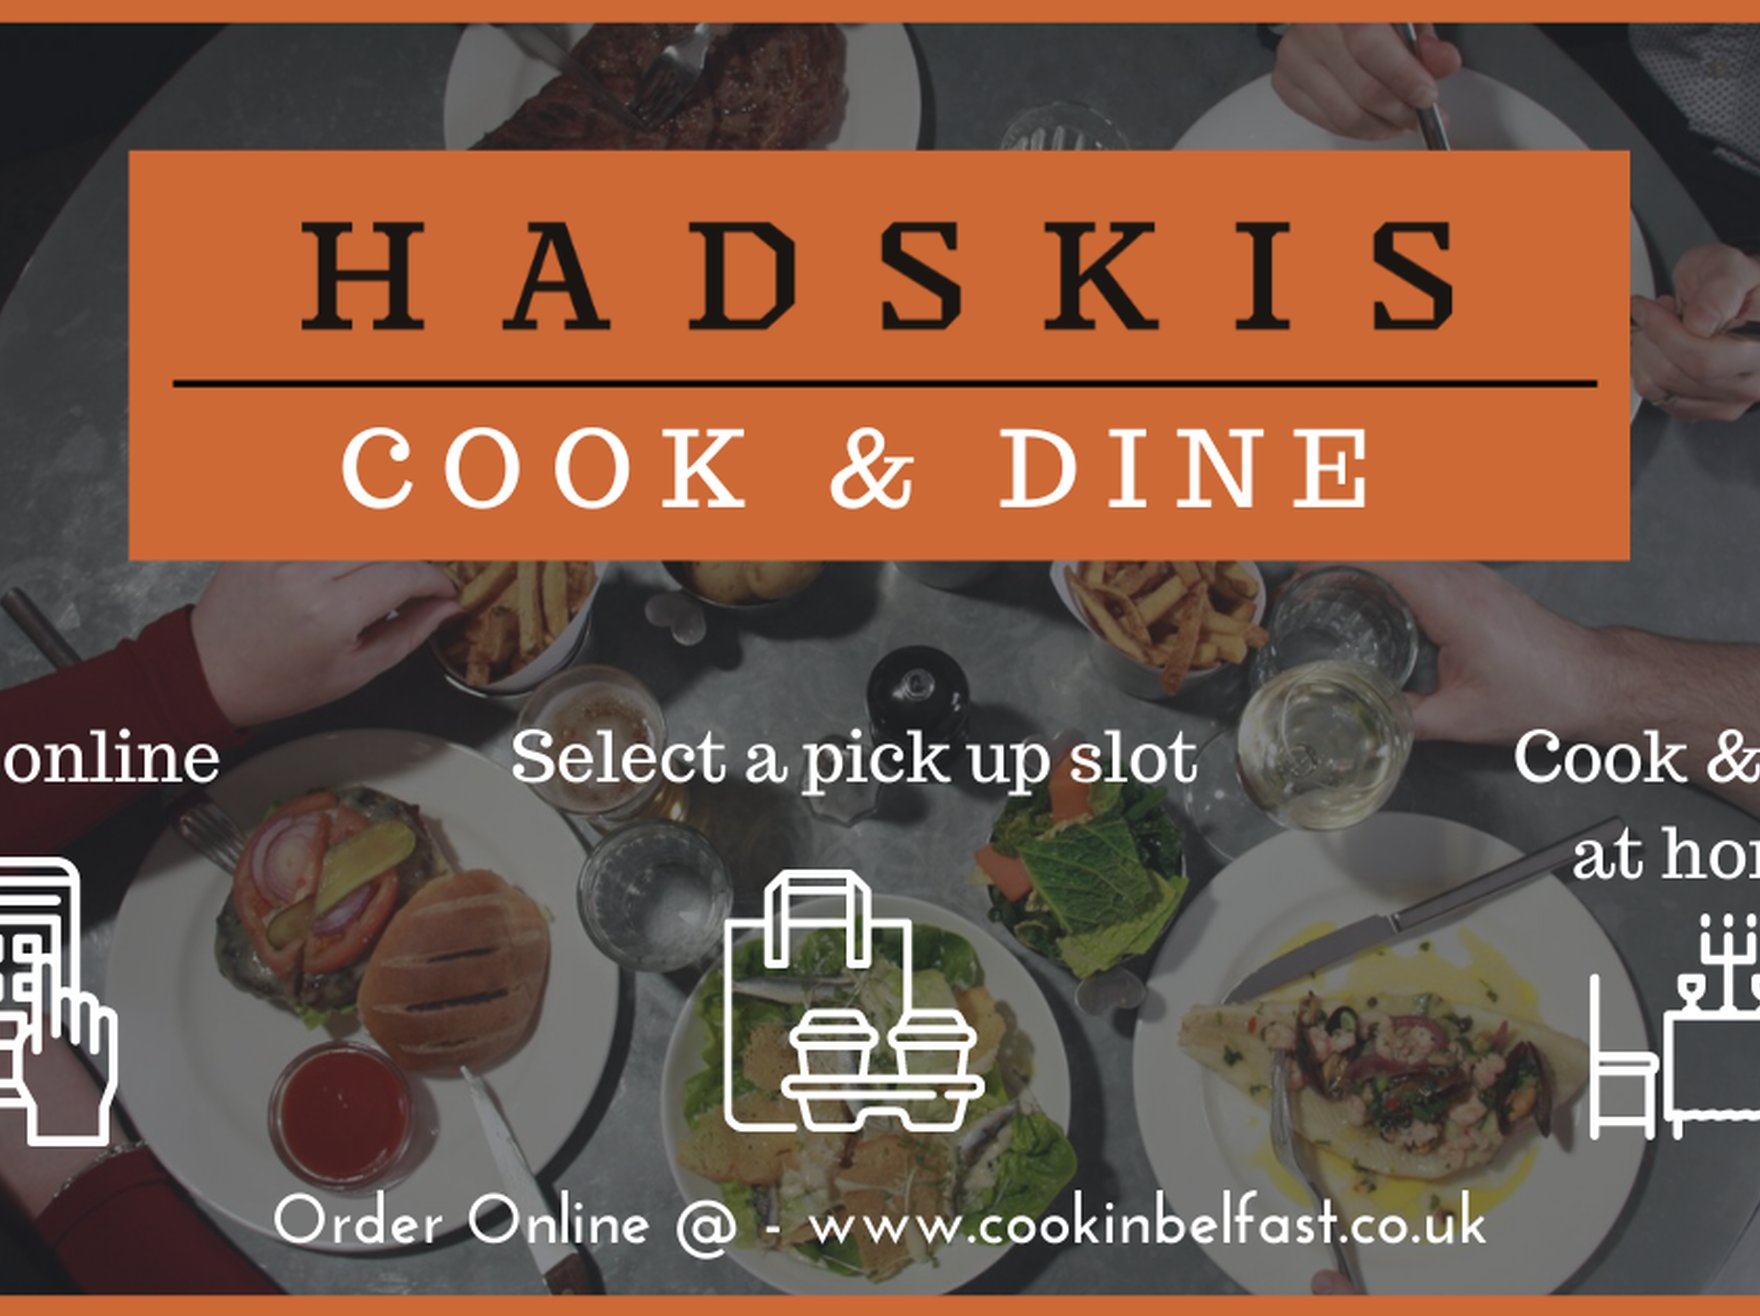 Hadskis Cook & Dine